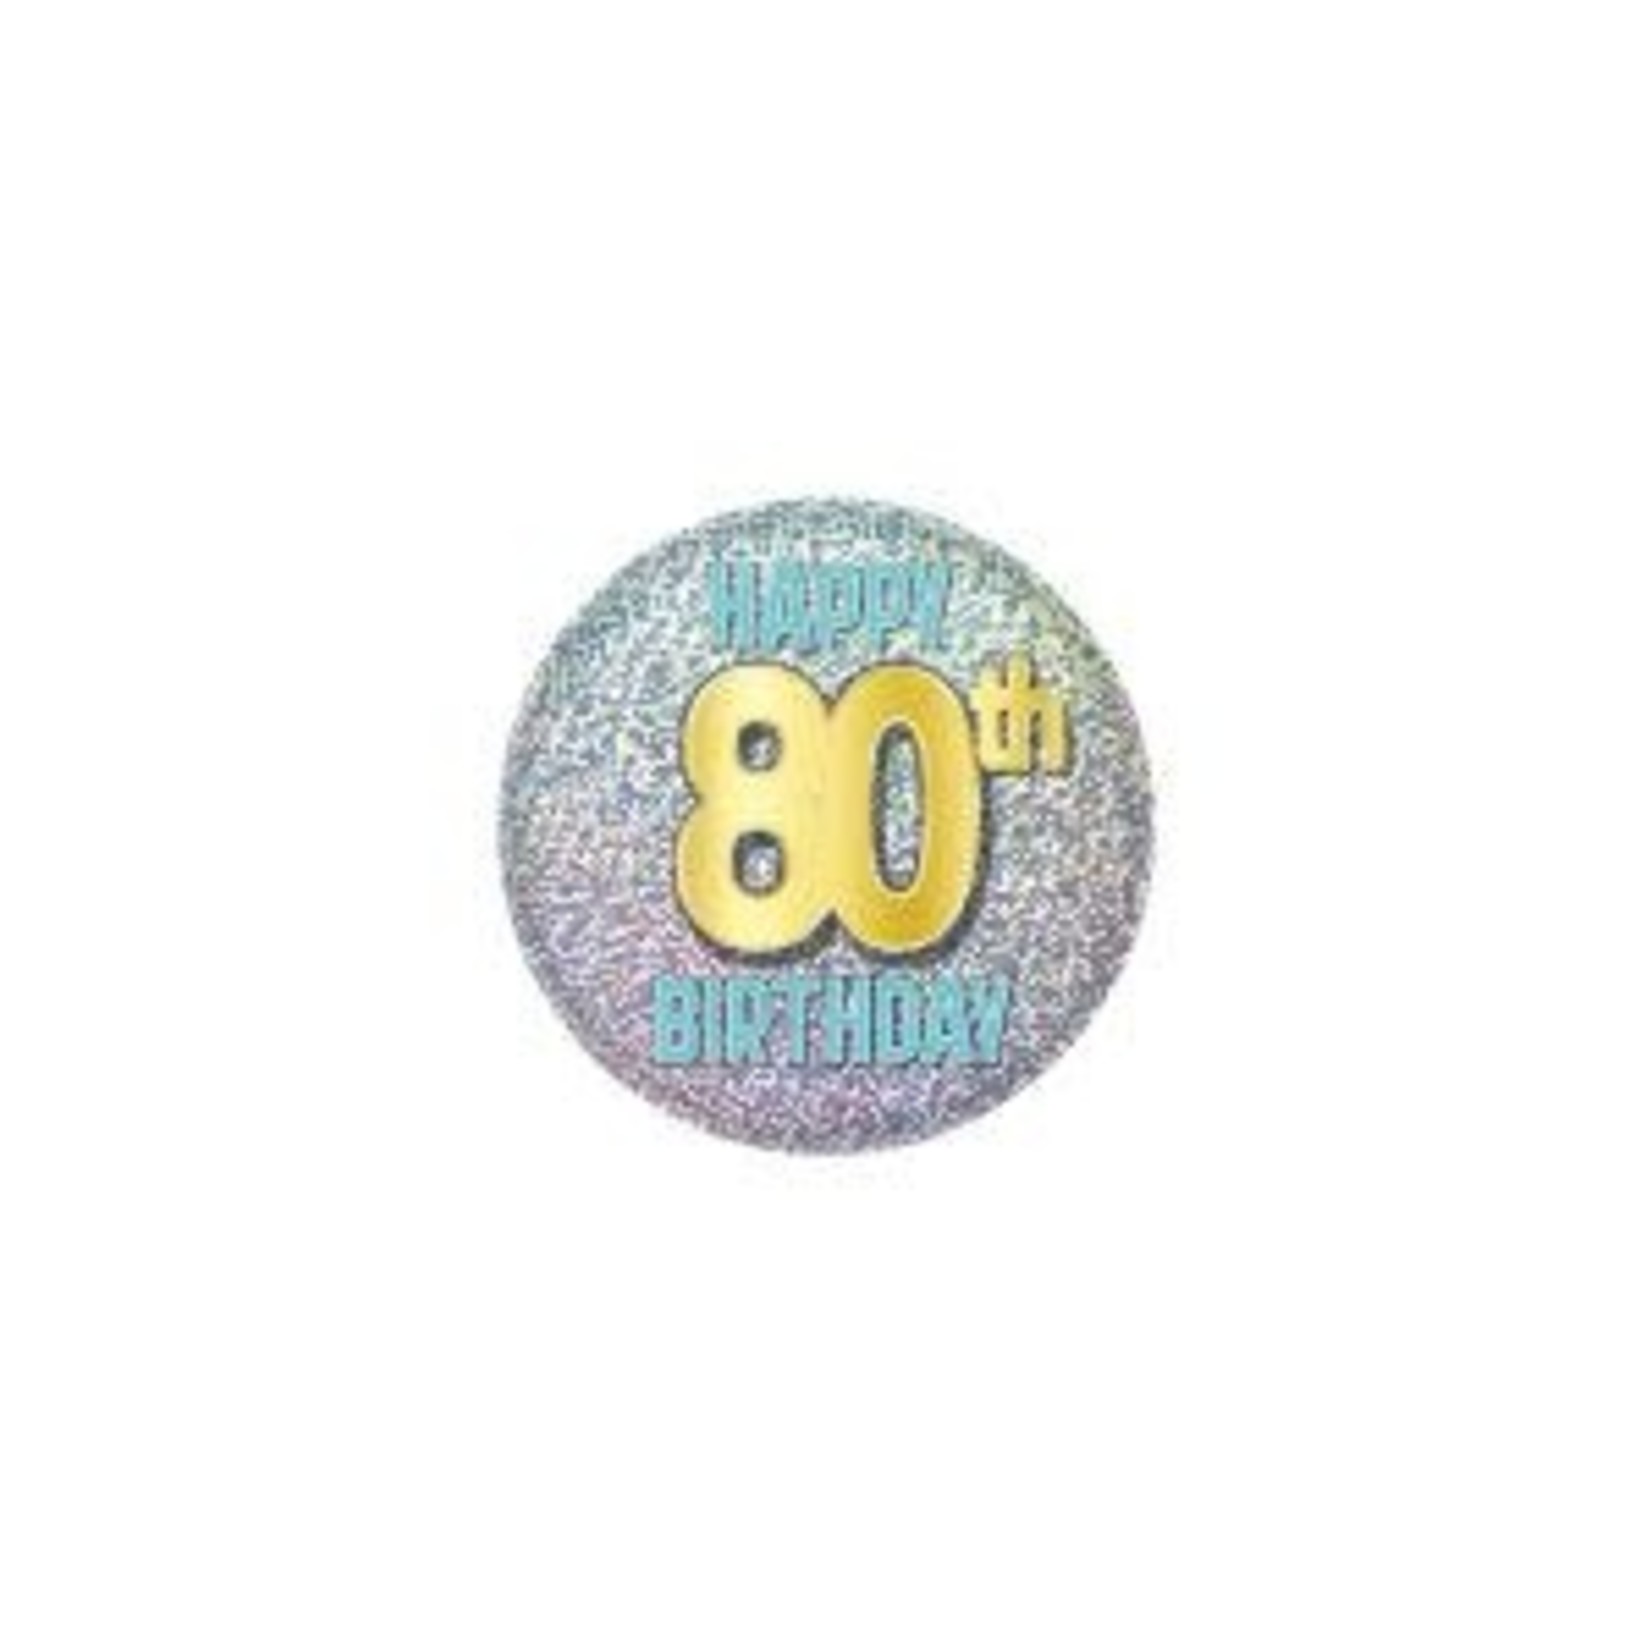 Beistle 80th Glittering Birthday Button - 1ct.